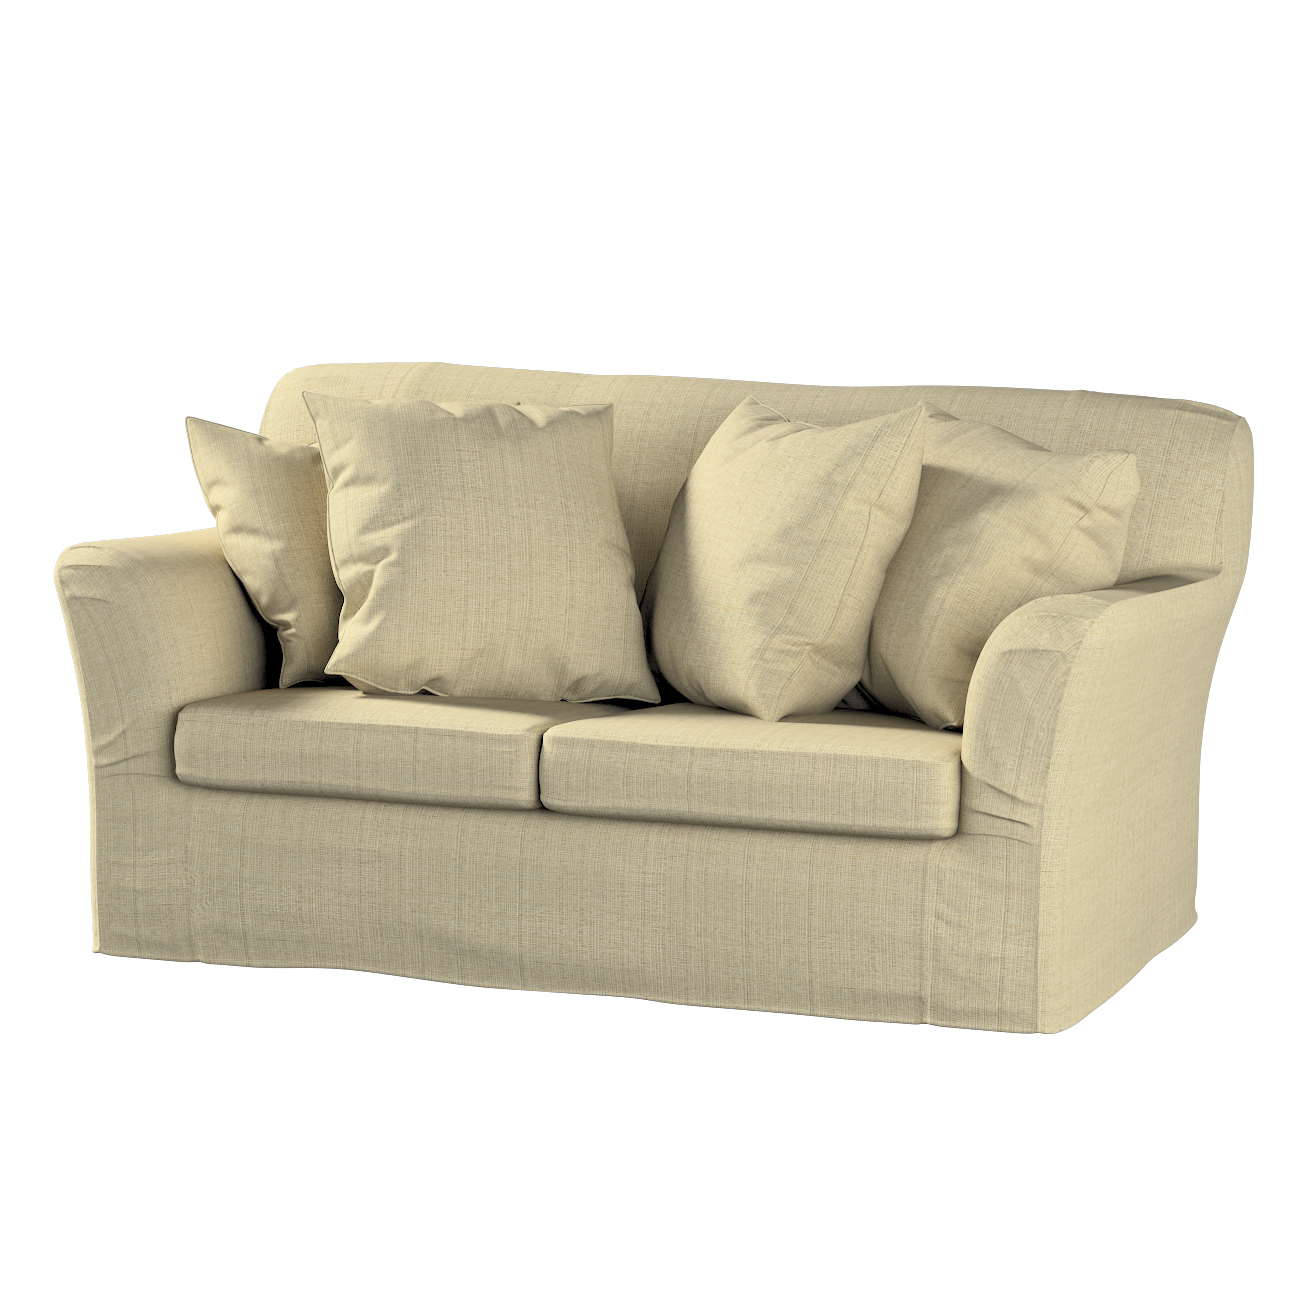 Bezug für Tomelilla 2-Sitzer Sofa nicht ausklappbar, beige-creme, Sofahusse günstig online kaufen